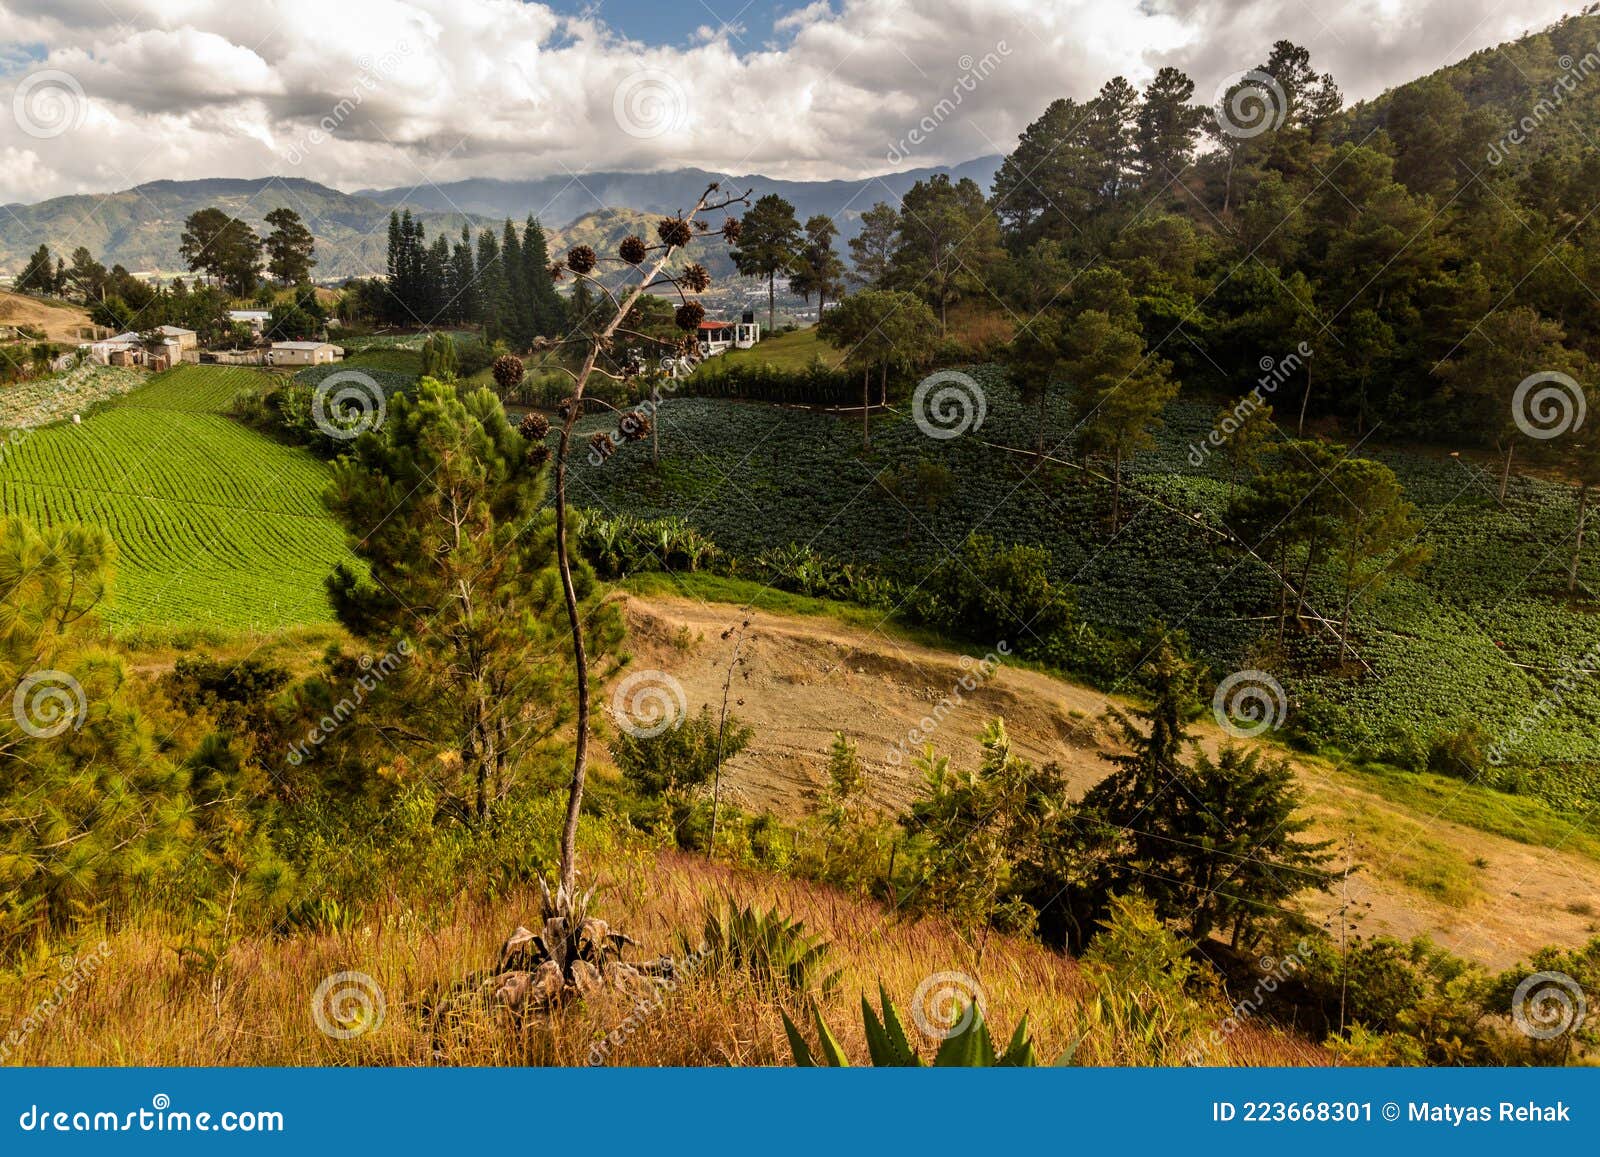 agricultural landscape near constanza, dominican republ